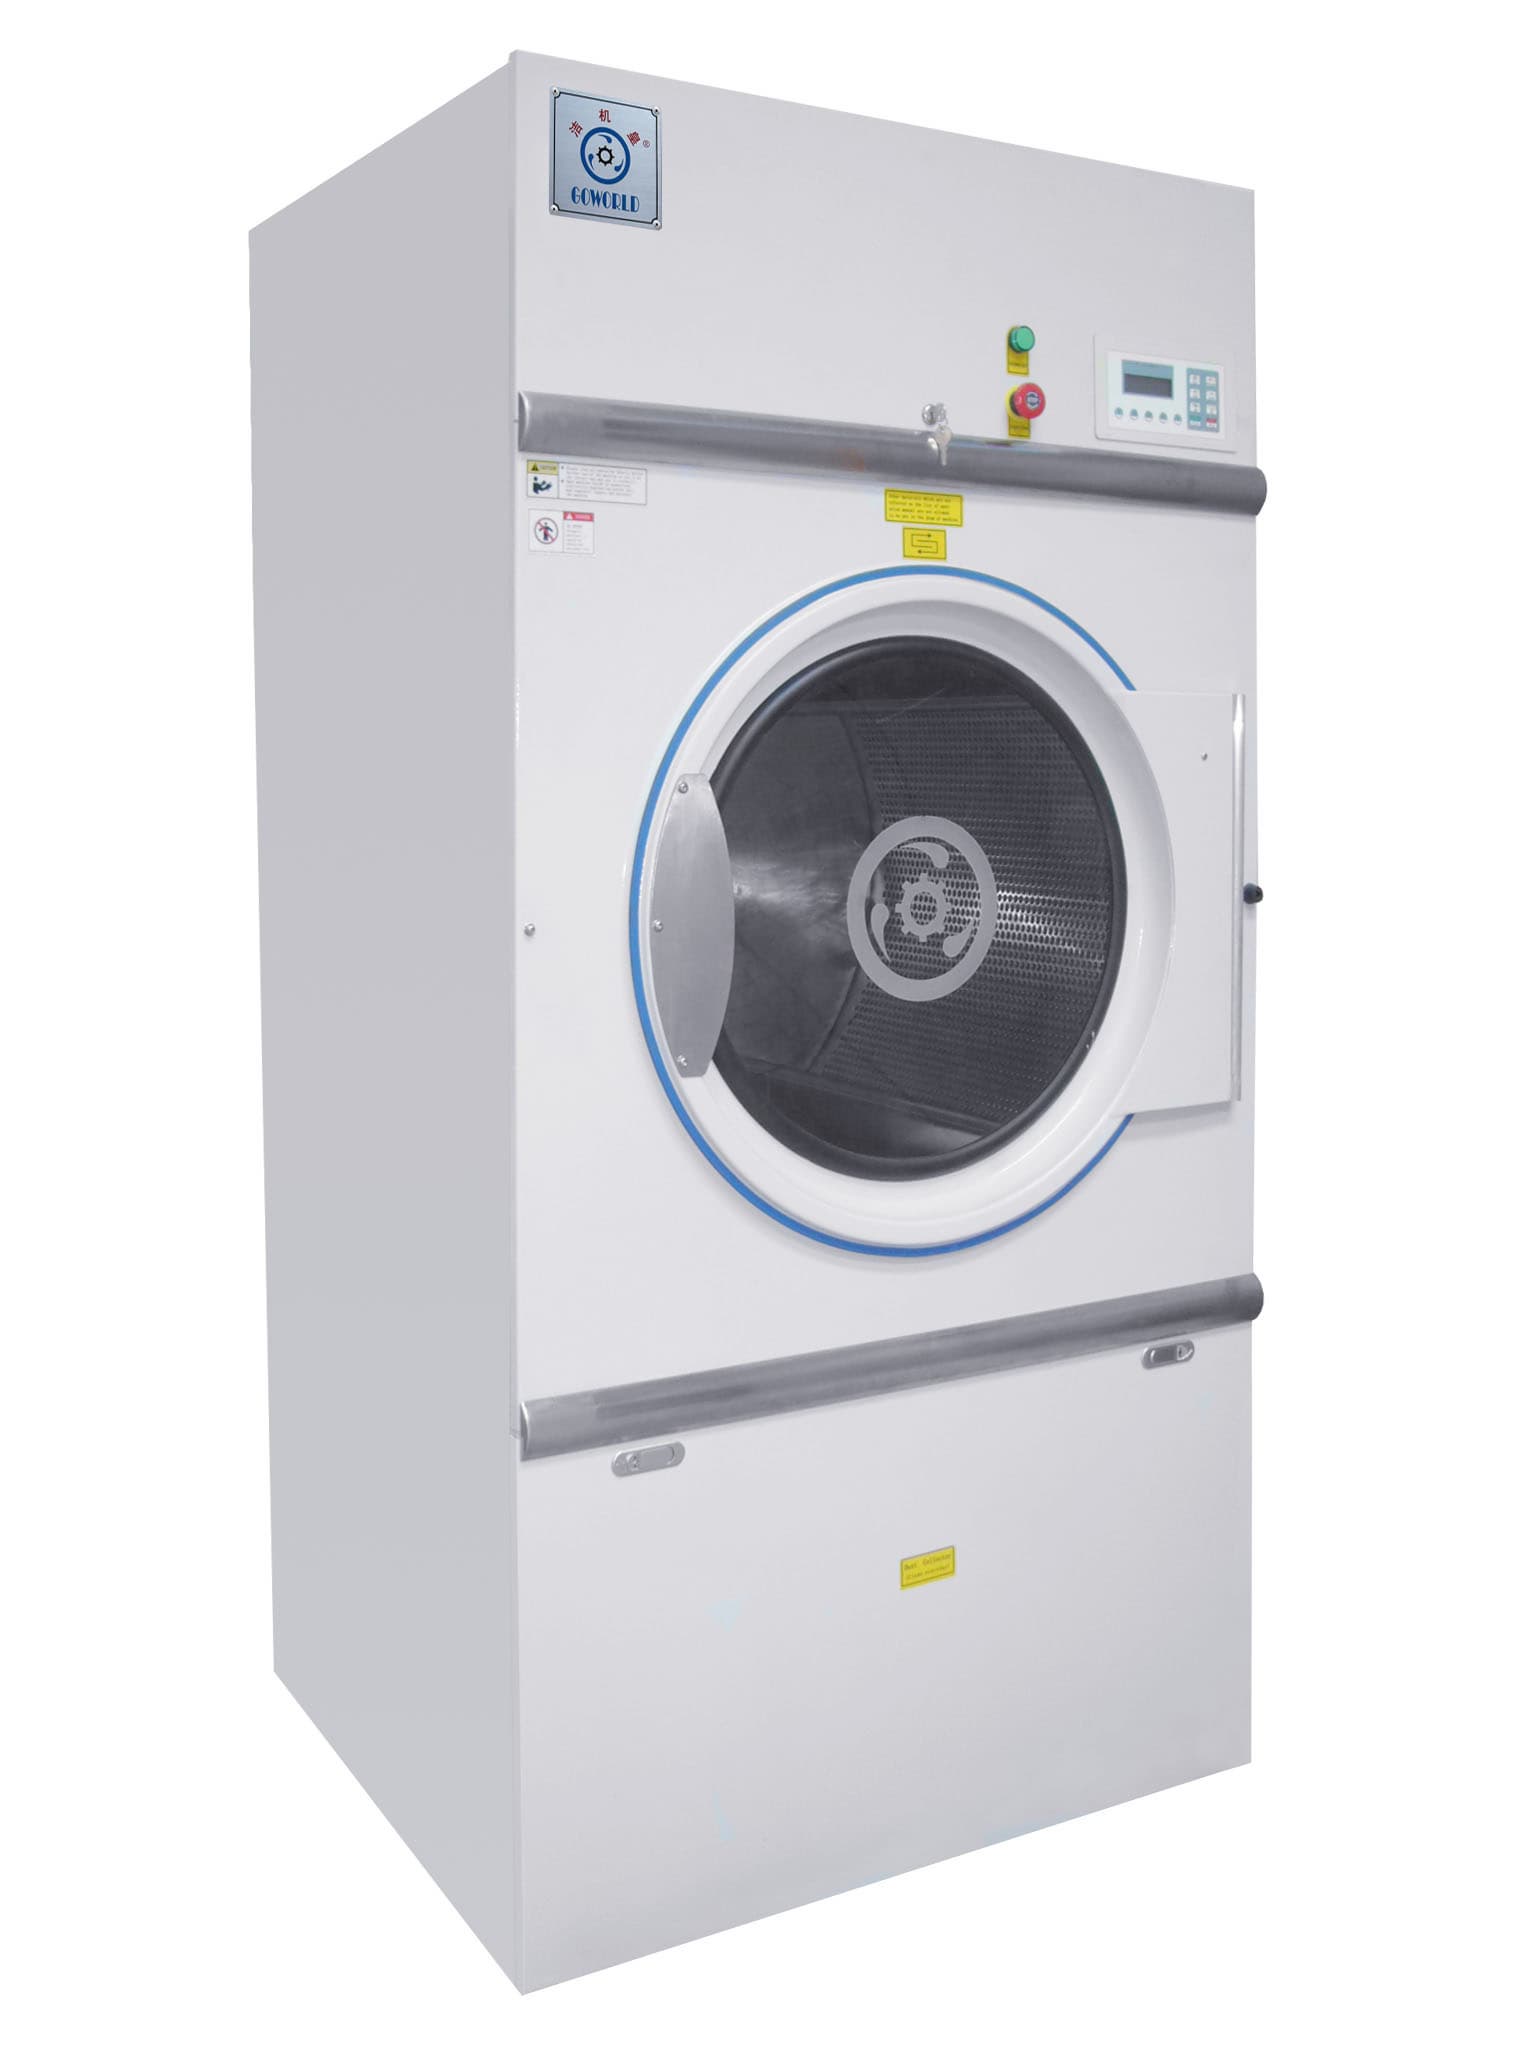 tumble dryer,drying machine,laundry dryer,industrial drying machine,laundry machine,clothes dryer